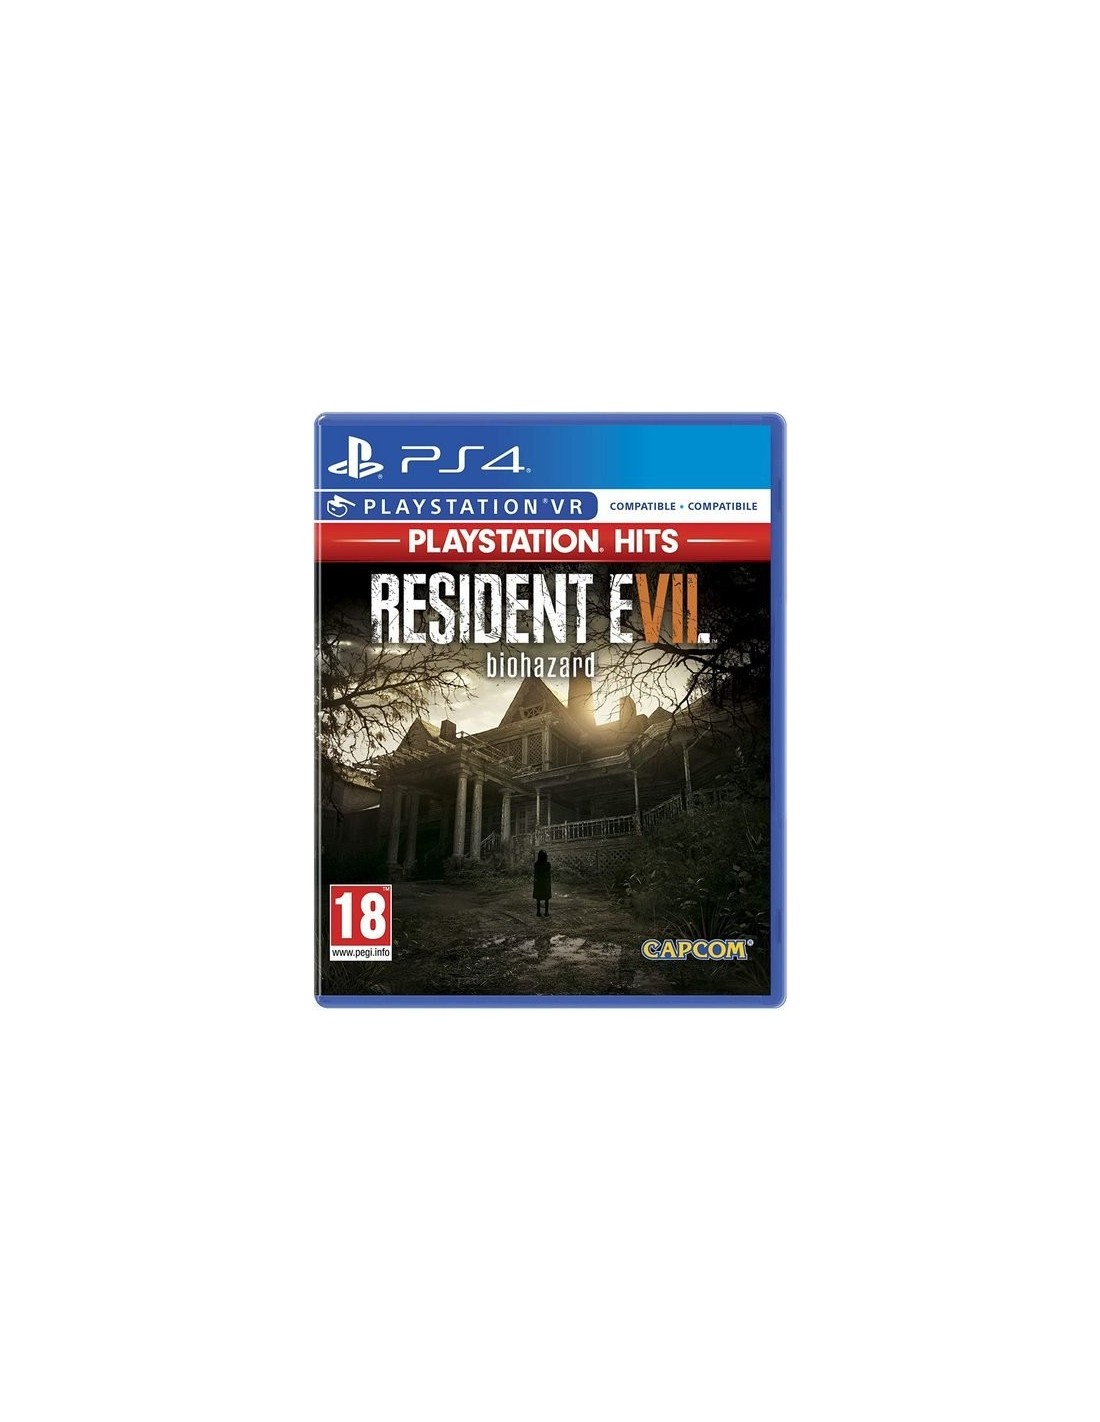 Hits PS4 Resident Evil Italiano 4 Capcom PlayStation Inglés, PlayStation 7,